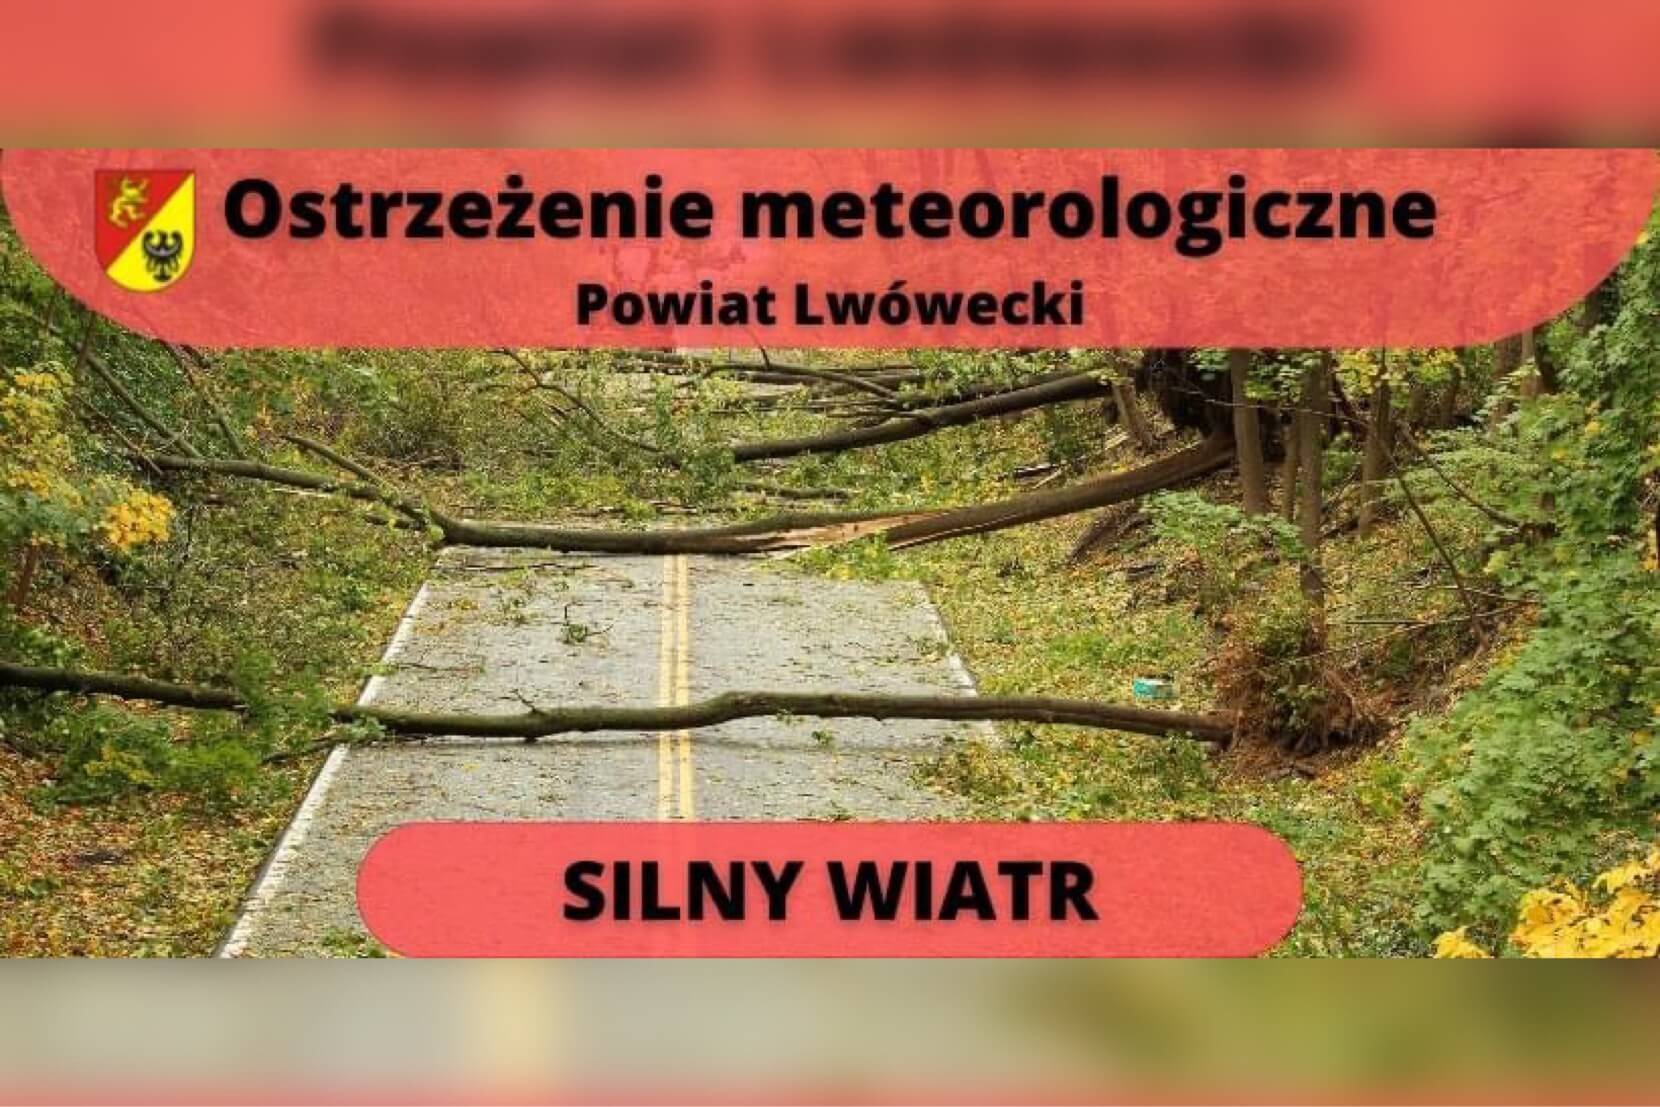  Silny wiatr w powiecie lwóweckim, jest ostrzeżenie!